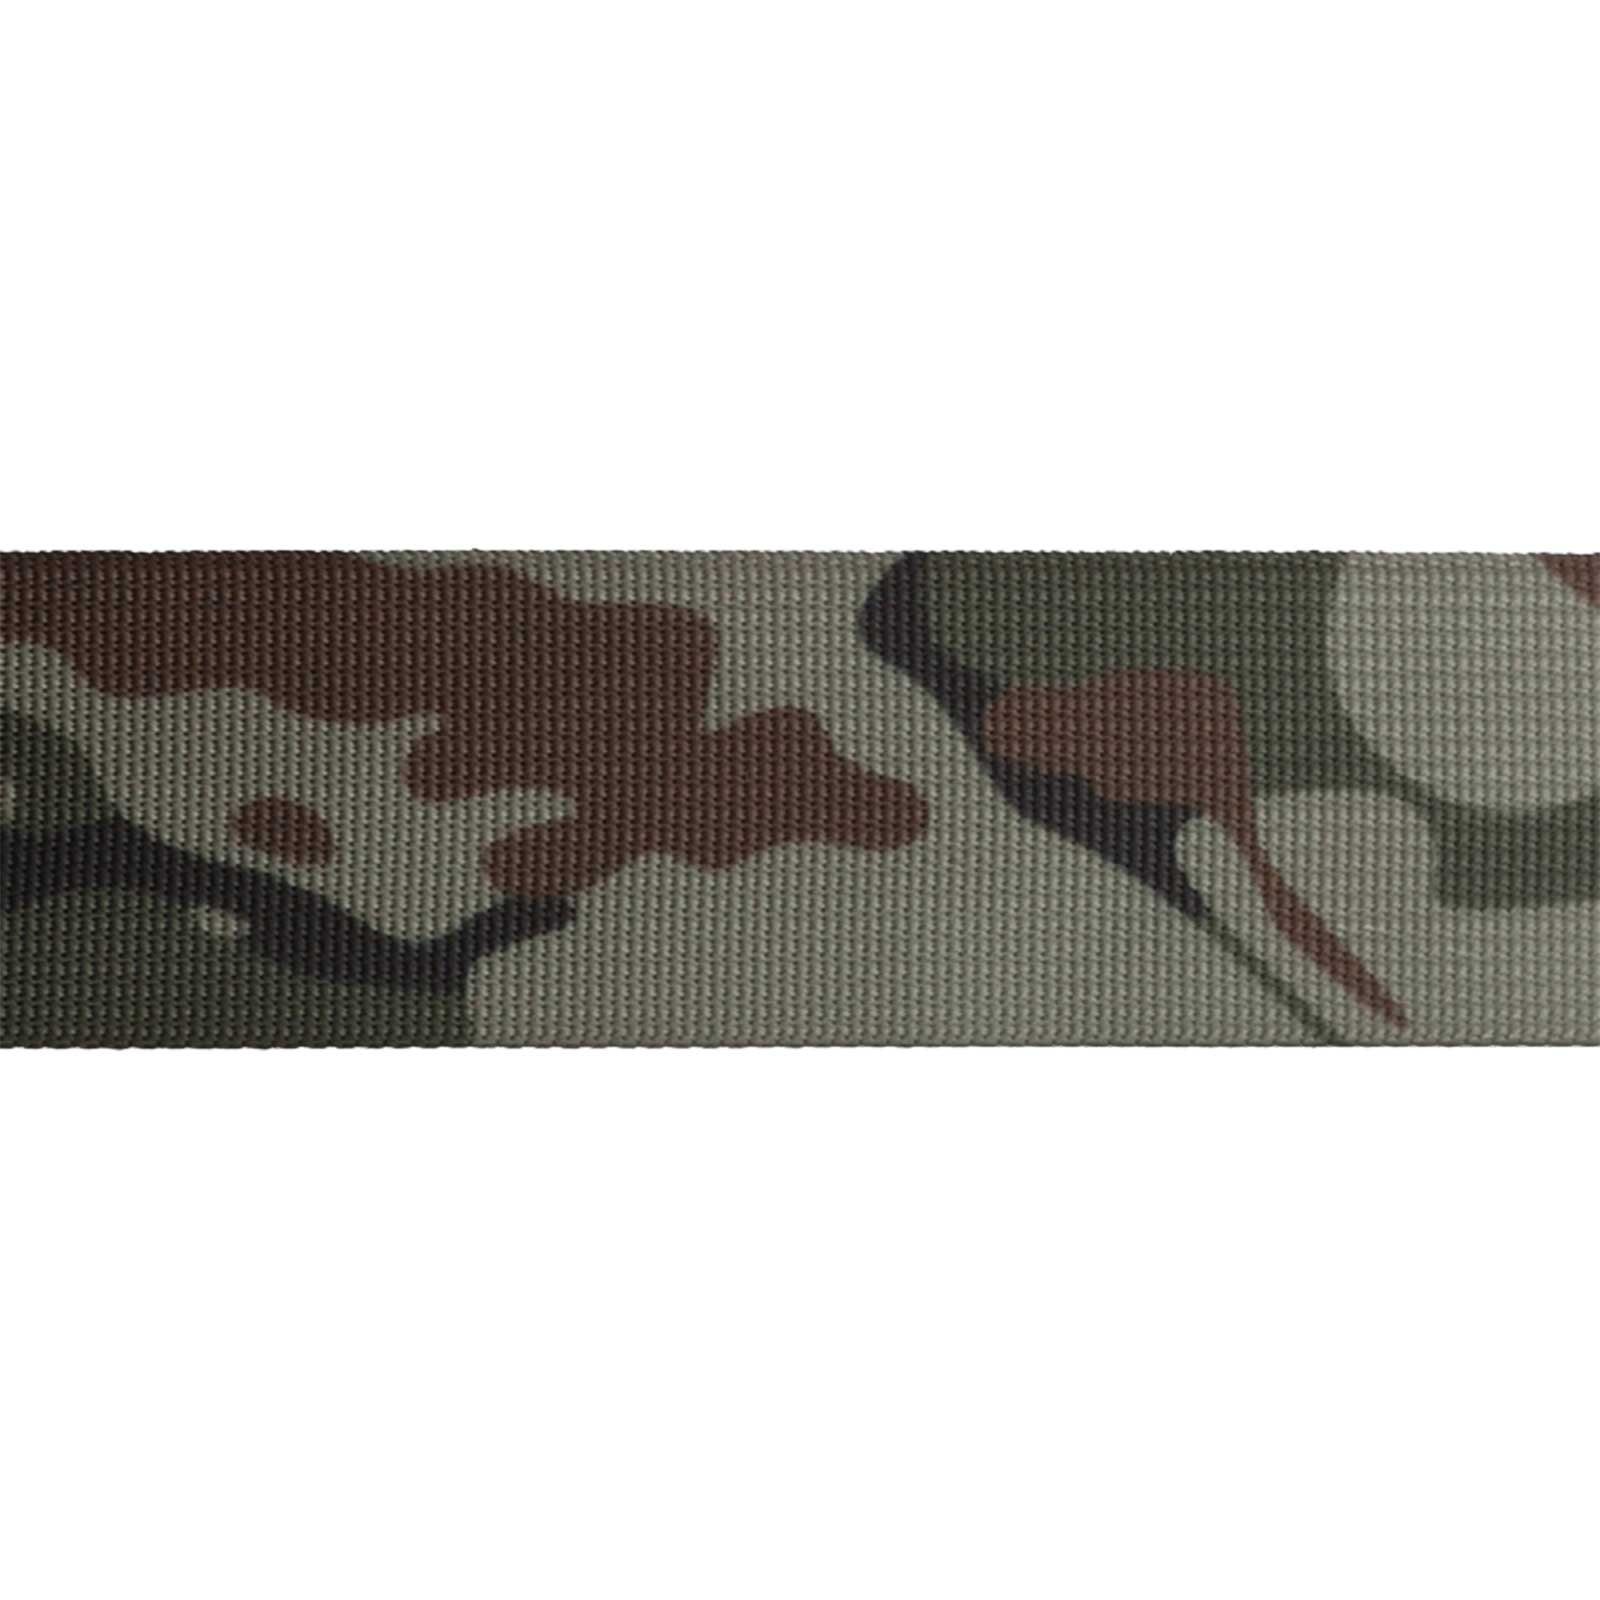 Rollladengurt, dark maDDma camouflage Design im Tarnmuster Gurtband 1m